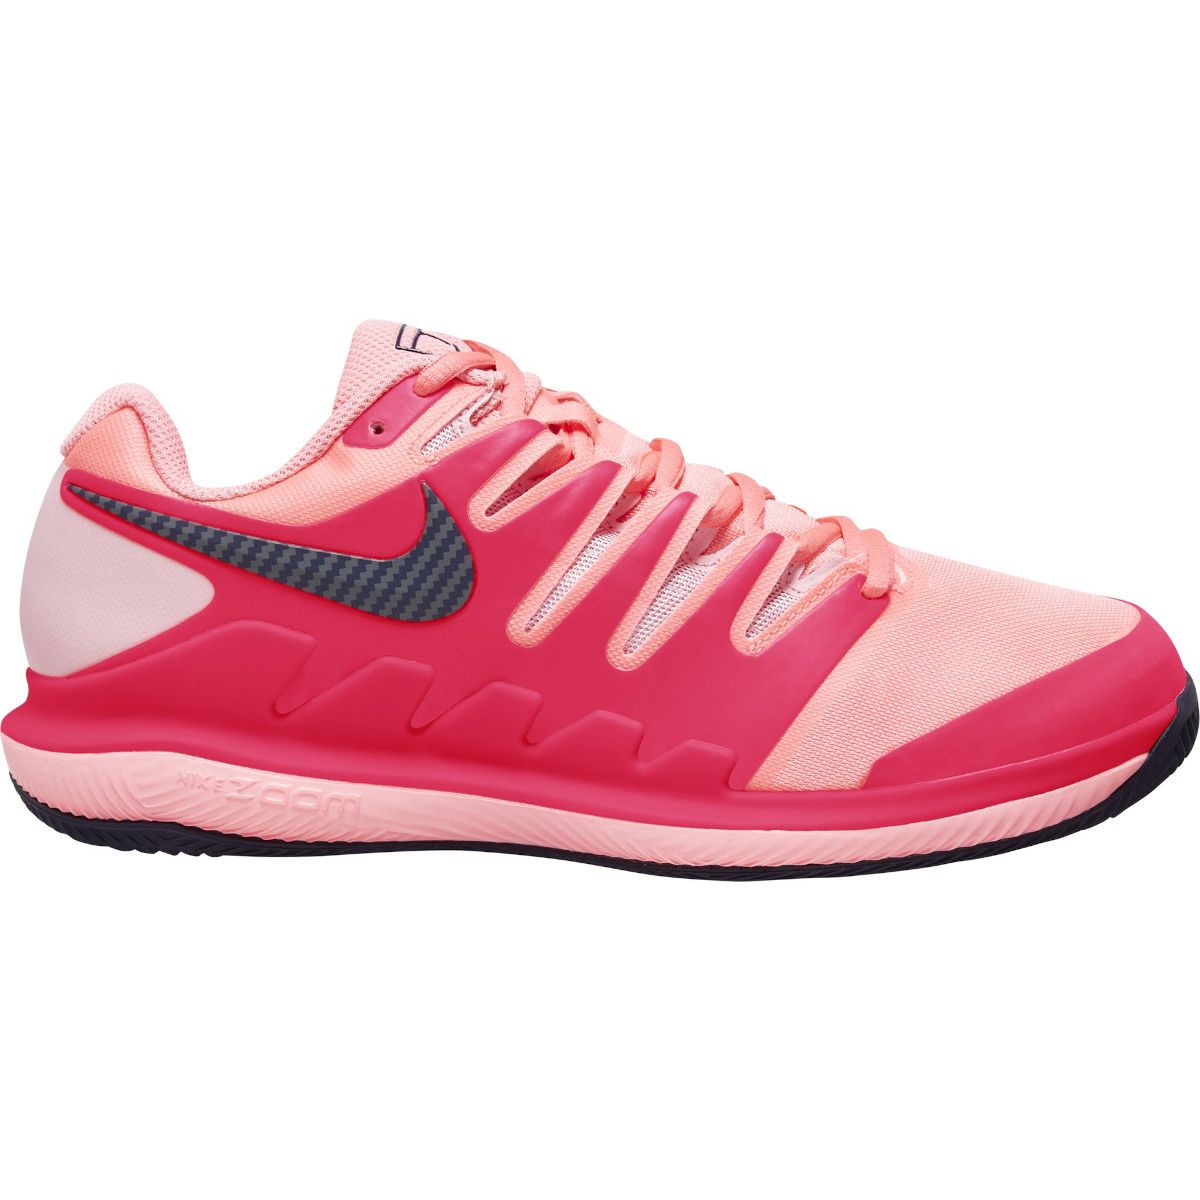 Nike Air Zoom Vapor X Clay Women's Tennis Shoes AA8025-604